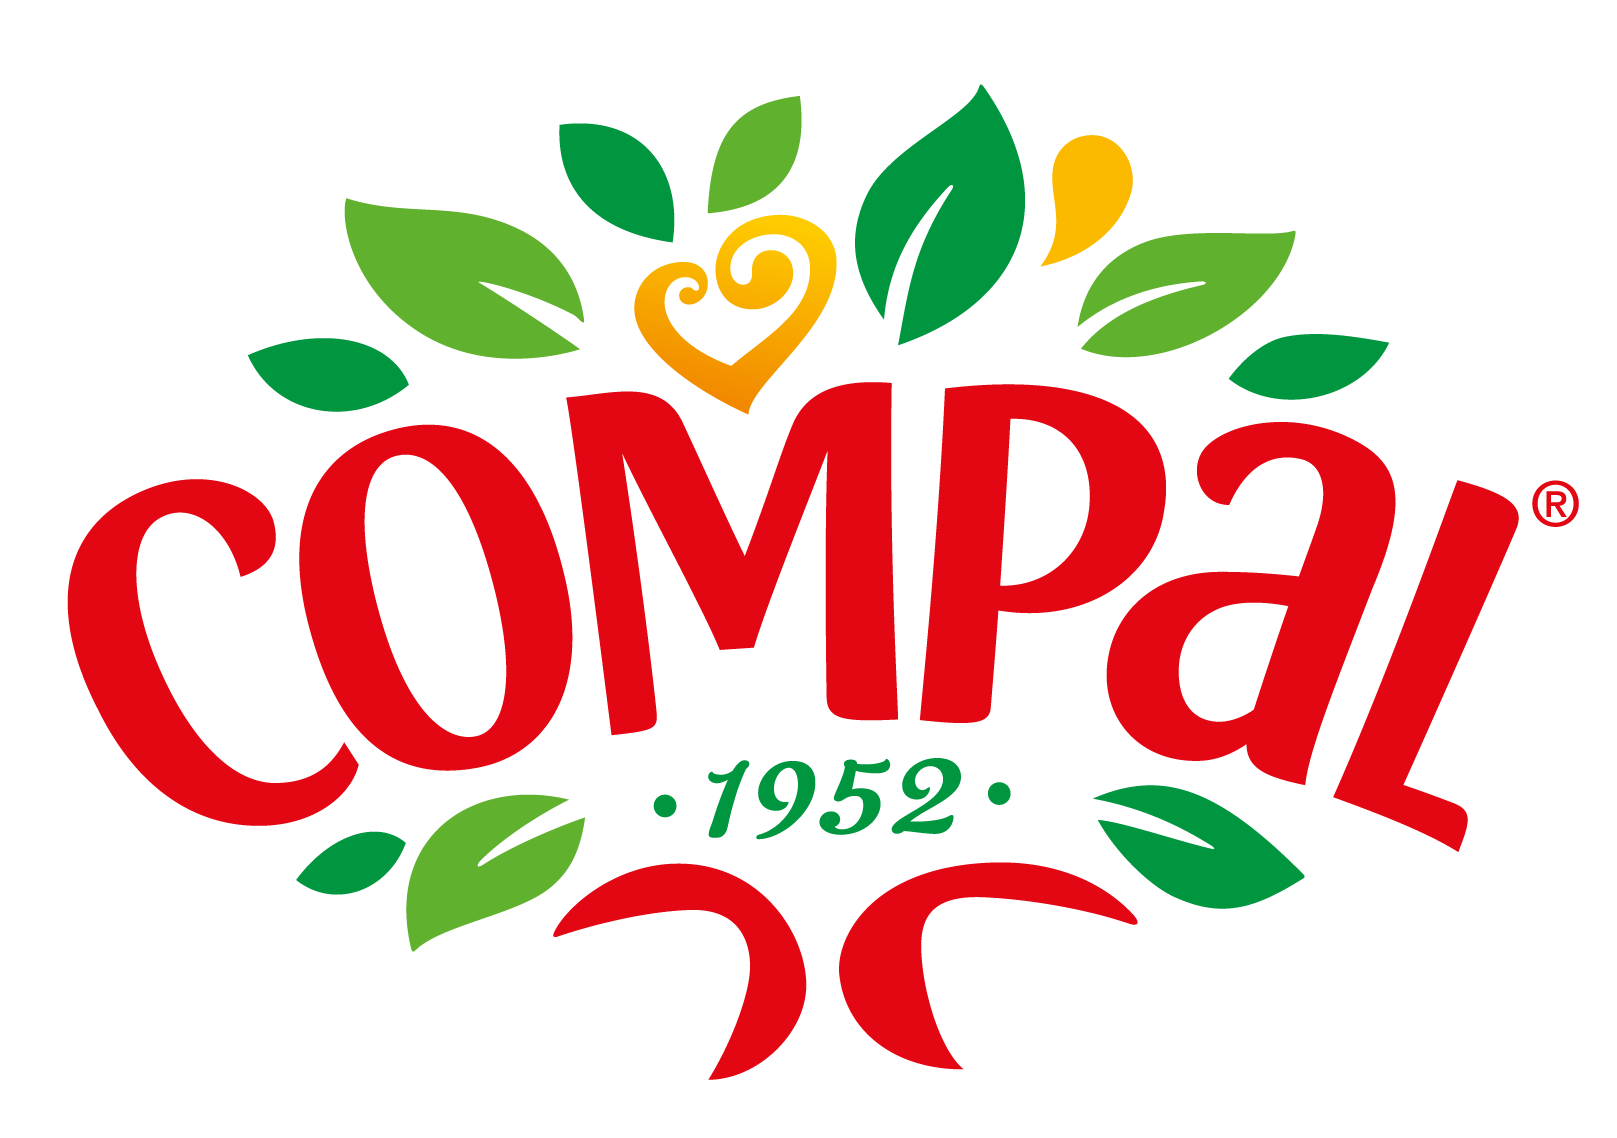 Compal Logo - Logo compal new.png